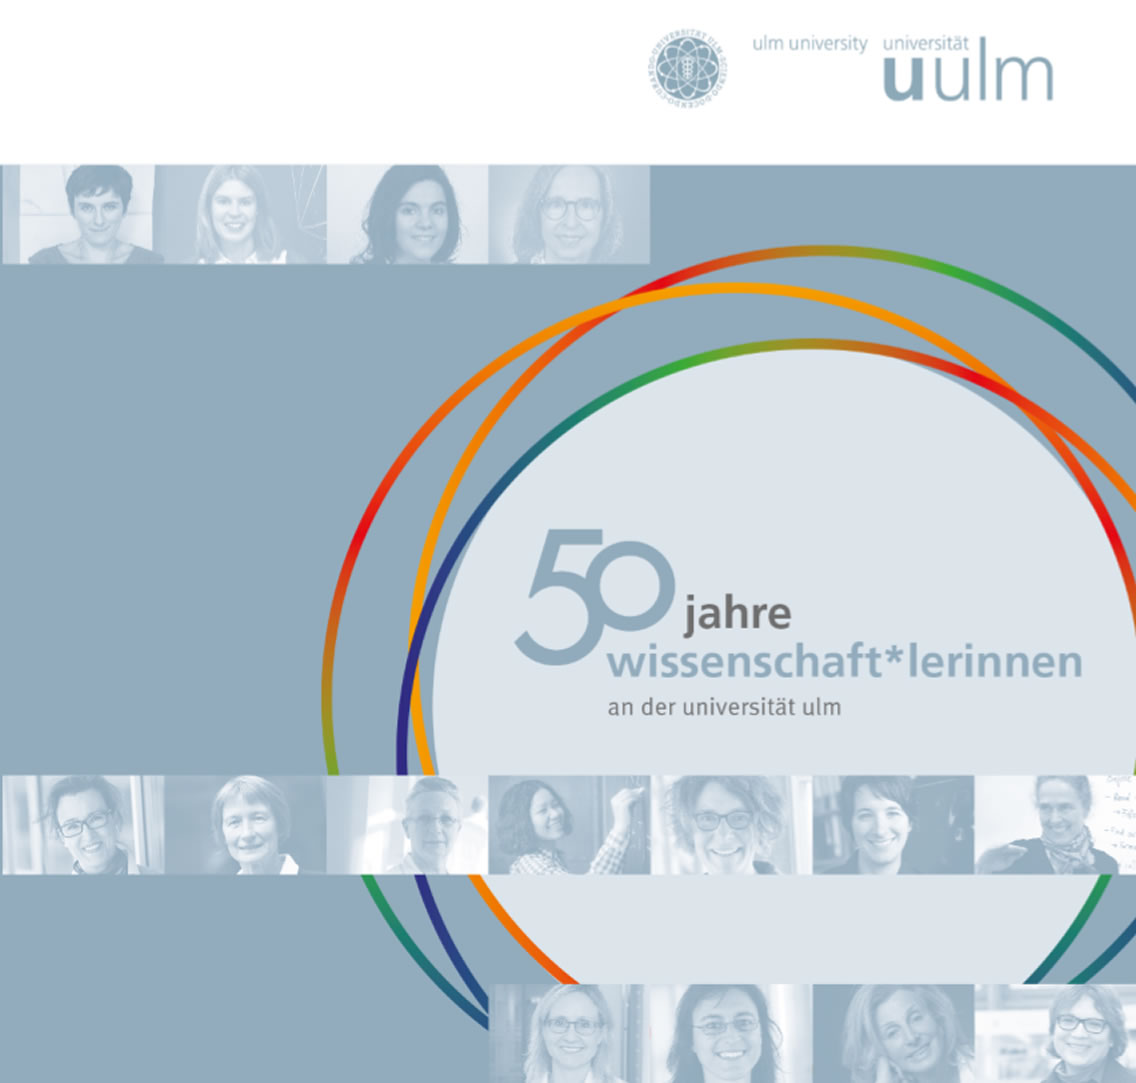 50 Jahre Wissenschaftlerinnen an der Universität Ulm